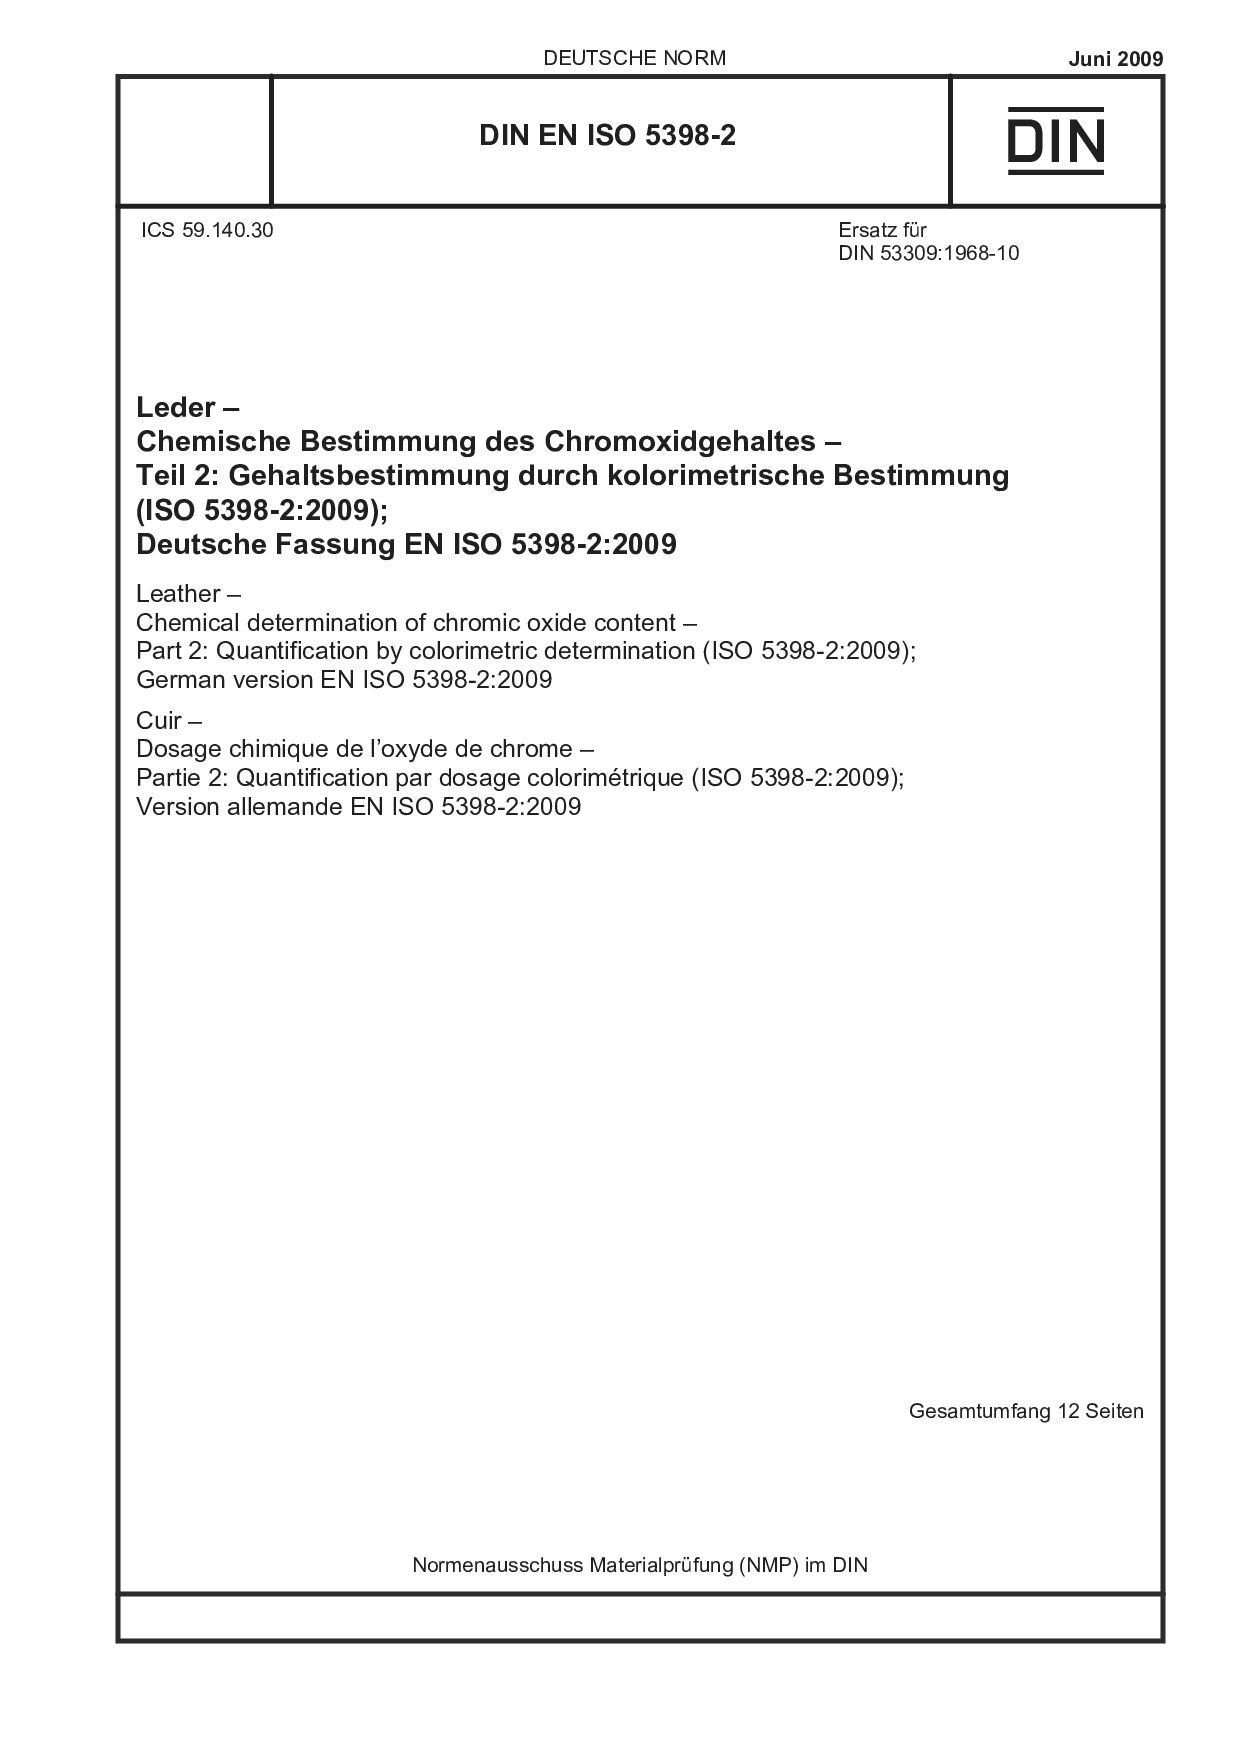 DIN EN ISO 5398-2:2009